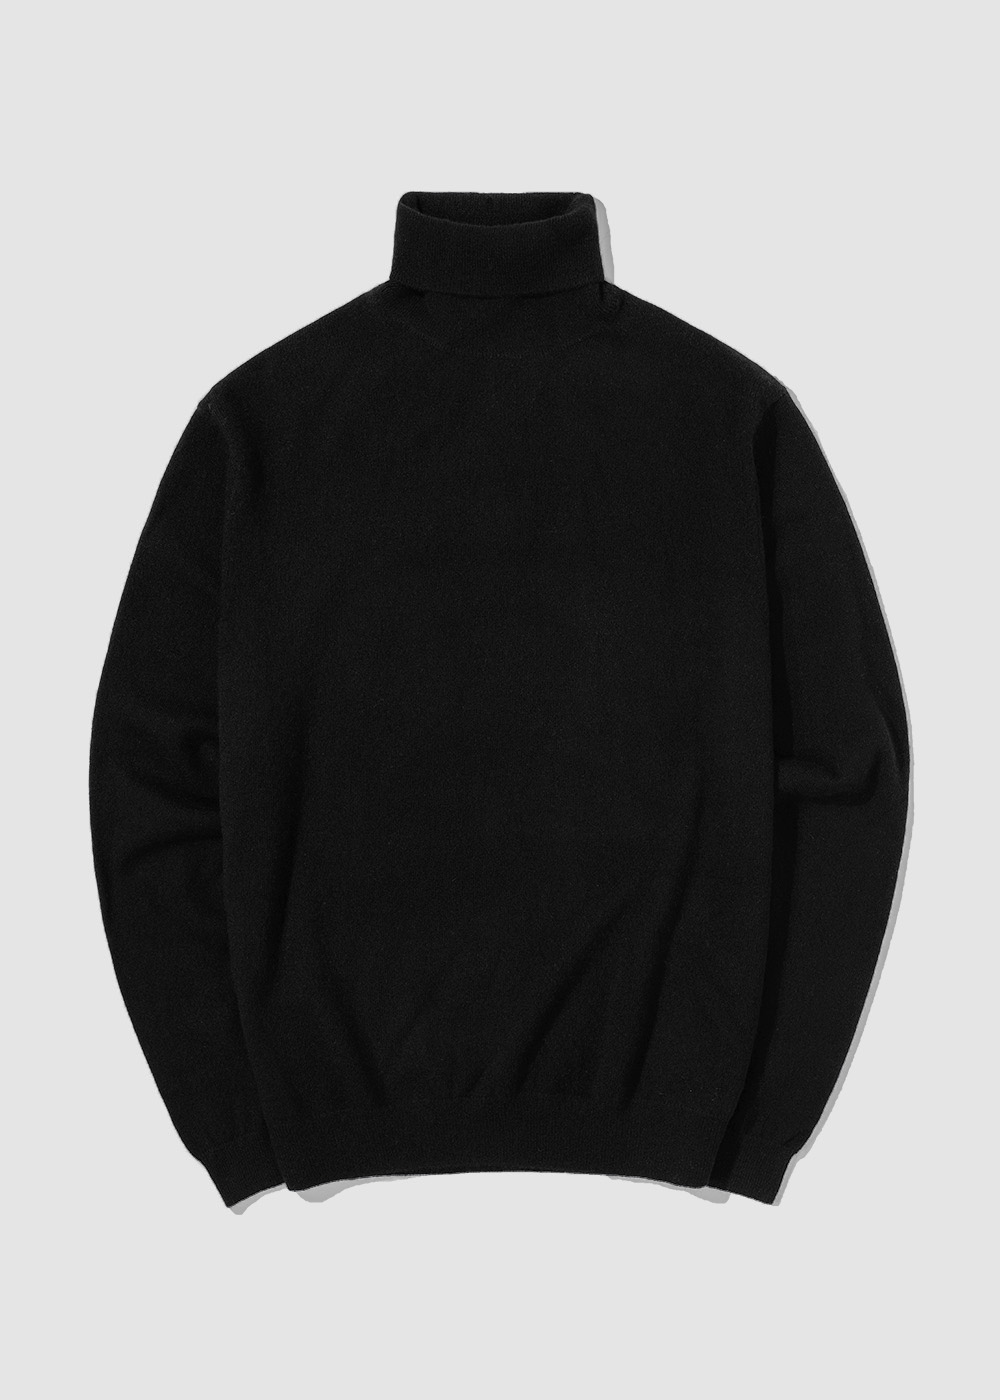 Cashmere 10% Blended Turtleneck Knit _ black